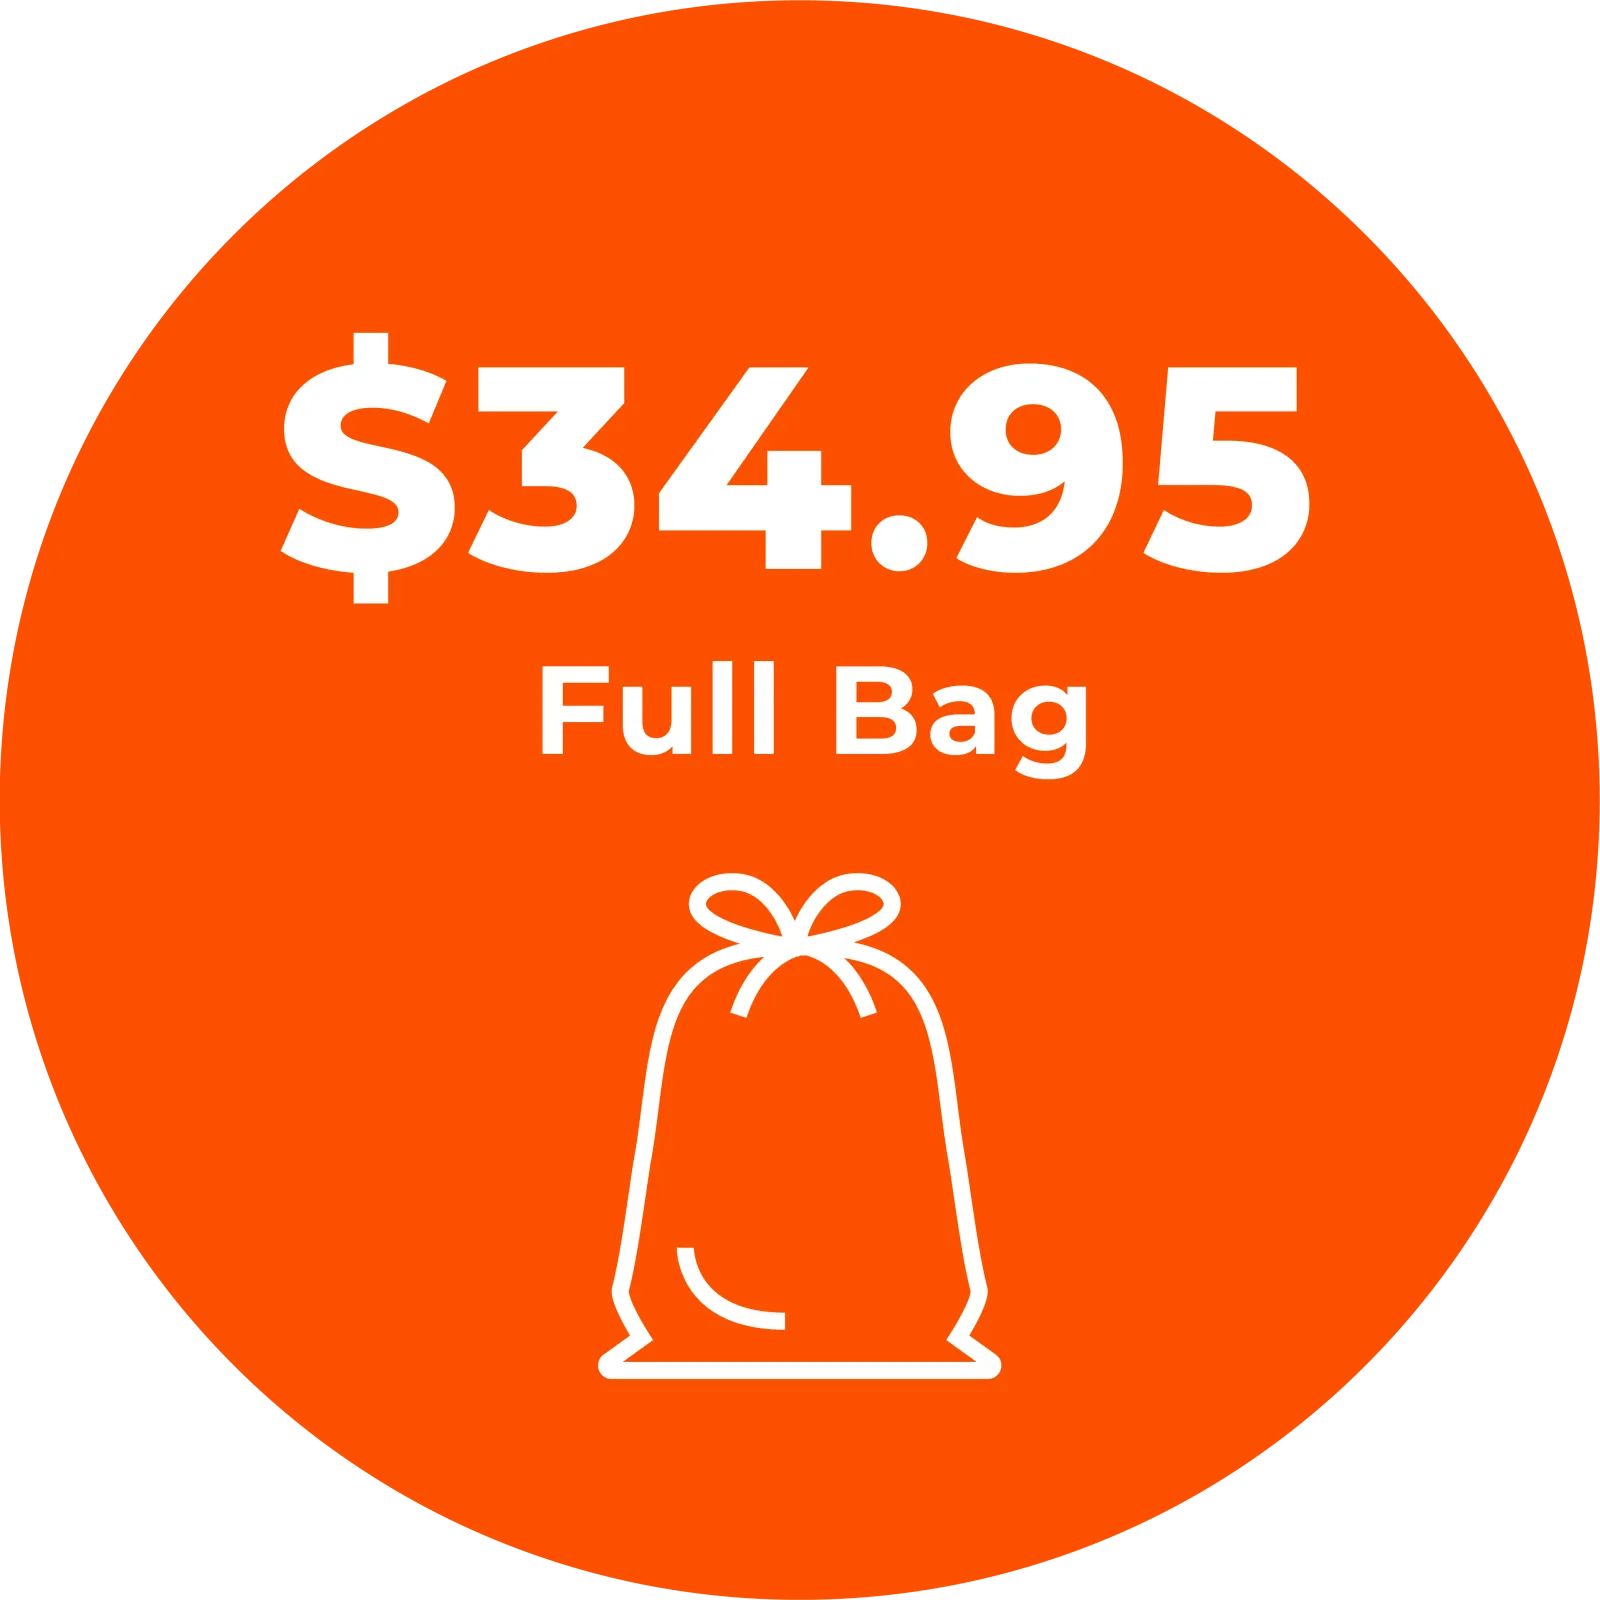 Wash & Fold full price bag 34.95